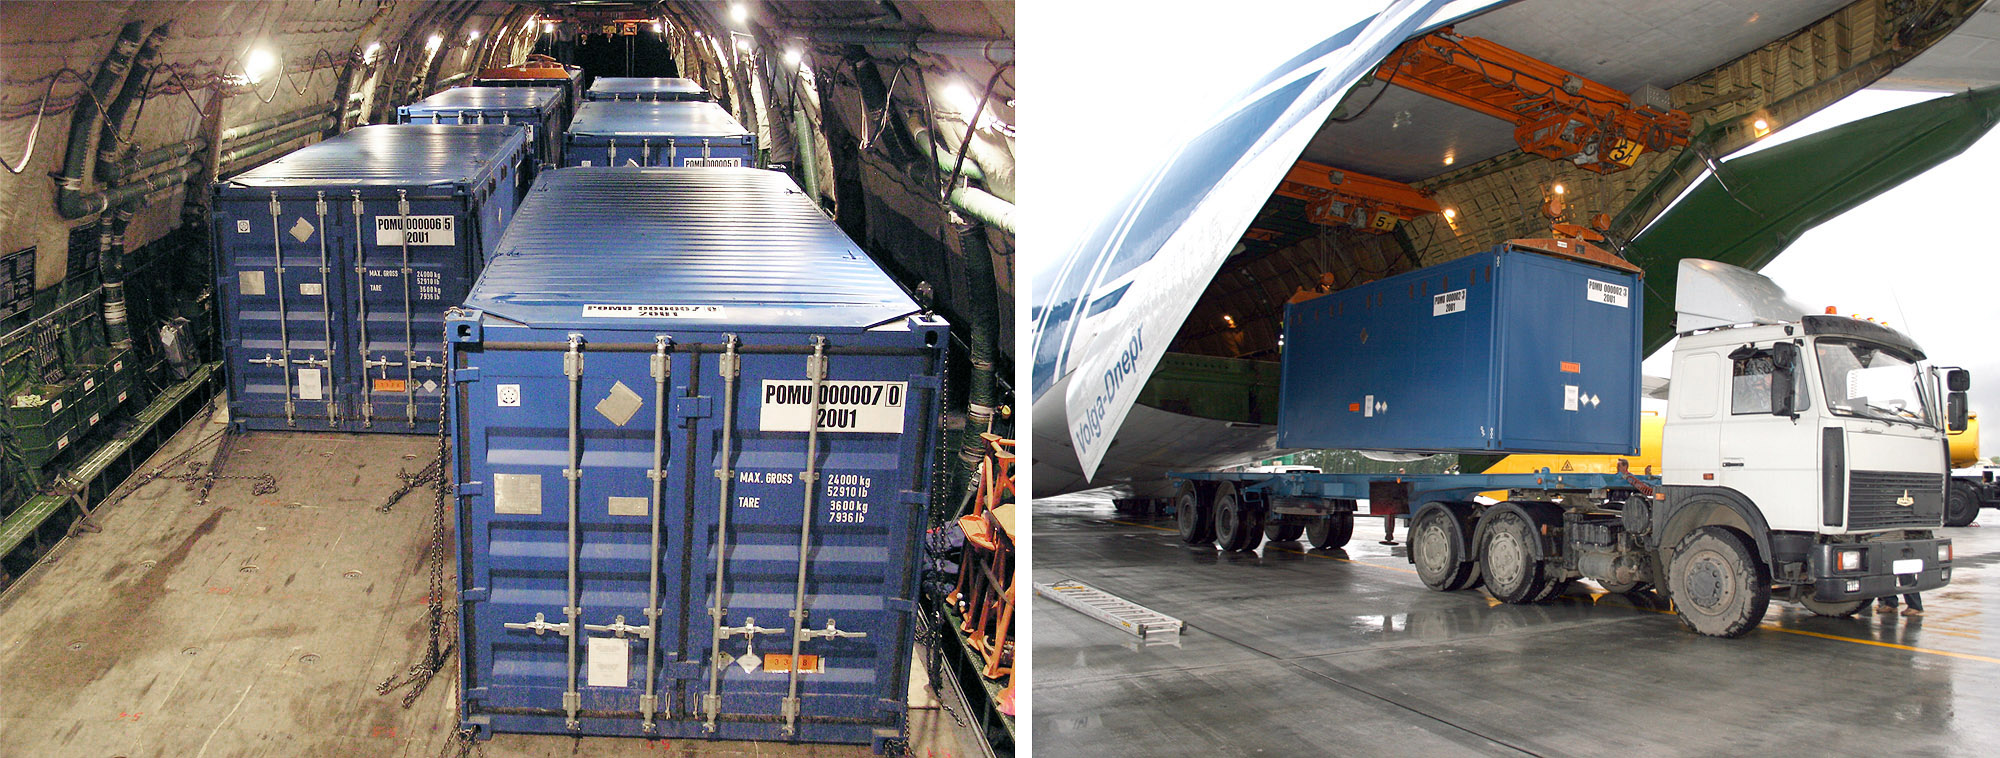 Загрузка транспортных пакетов в самолет АН-124-100 в аэропорту г. Бухарест. Выгрузка из самолета в аэропорту г. Екатеринбург